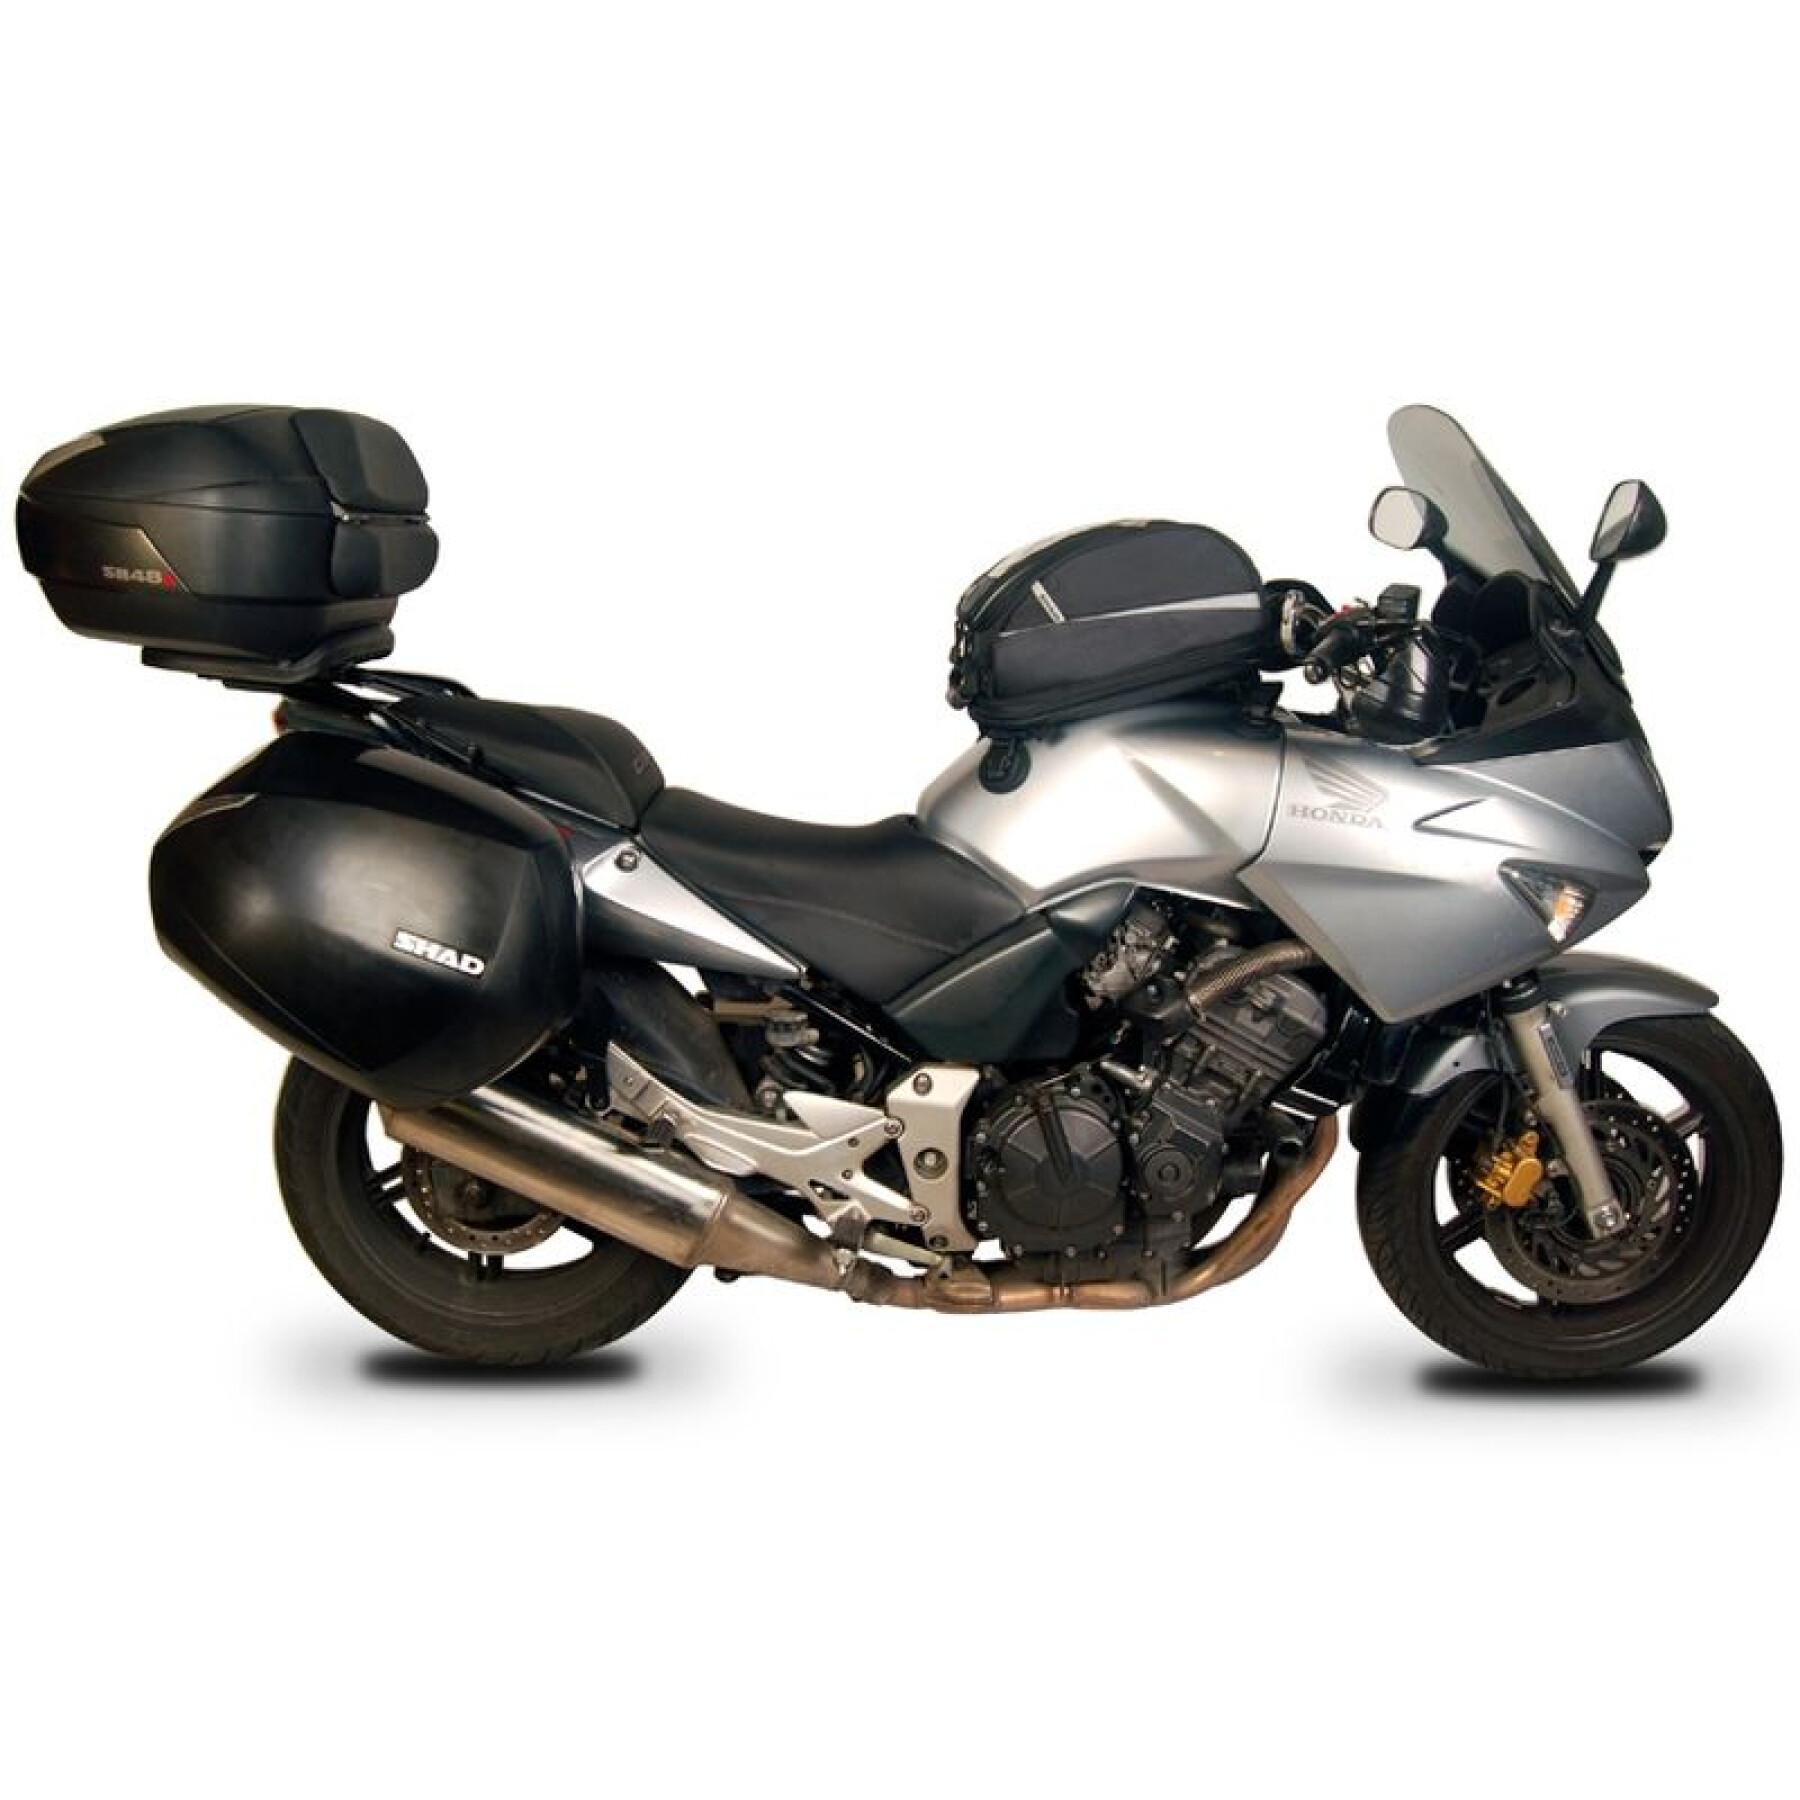 Motorfiets zijkoffersteun Shad 3P Systeem Honda Cbf 600 S/N (04 tot 12)